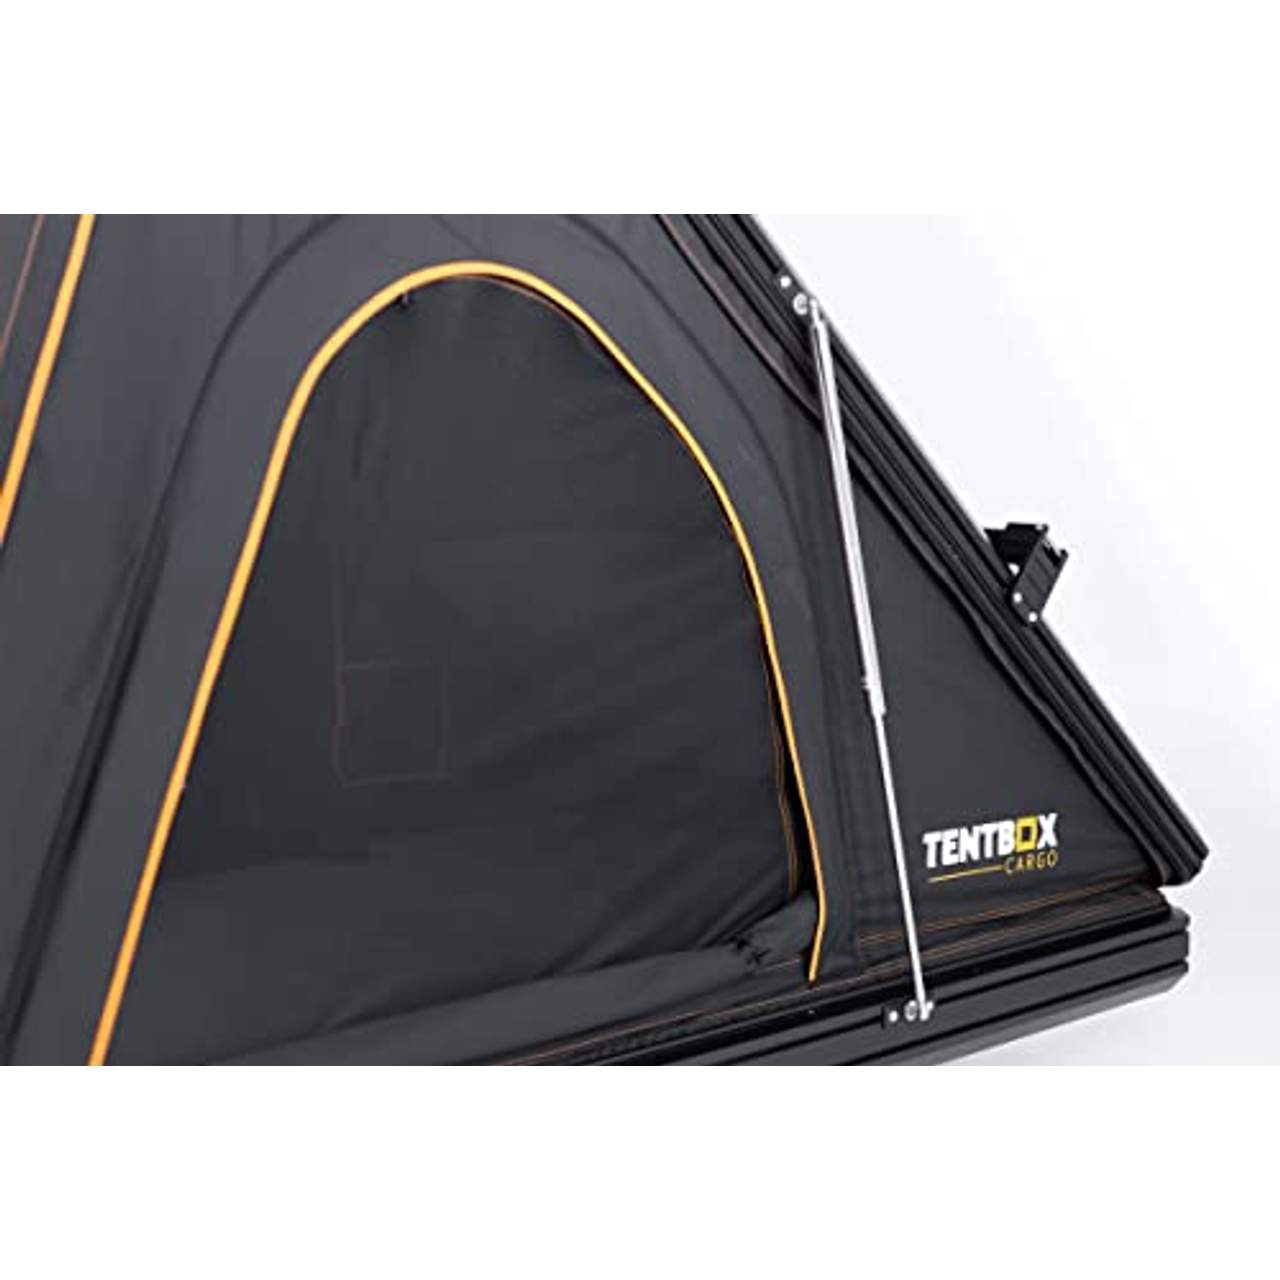 TentBox Cargo Autodachzelt für 2 Personen & alle Jahreszeiten geeignet